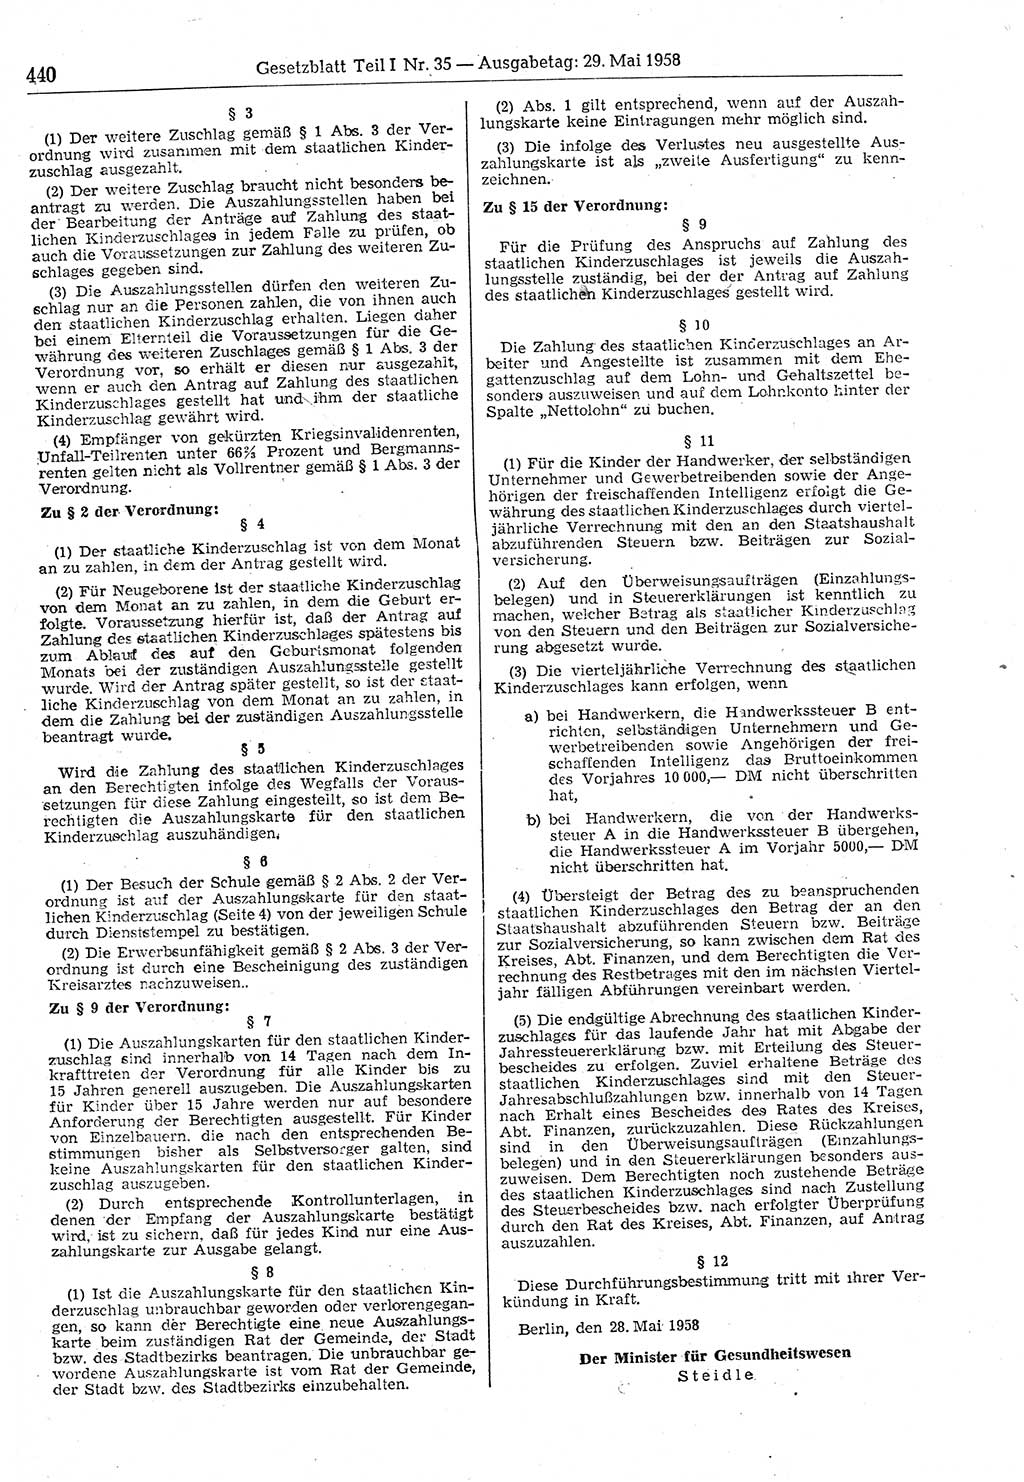 Gesetzblatt (GBl.) der Deutschen Demokratischen Republik (DDR) Teil Ⅰ 1958, Seite 440 (GBl. DDR Ⅰ 1958, S. 440)